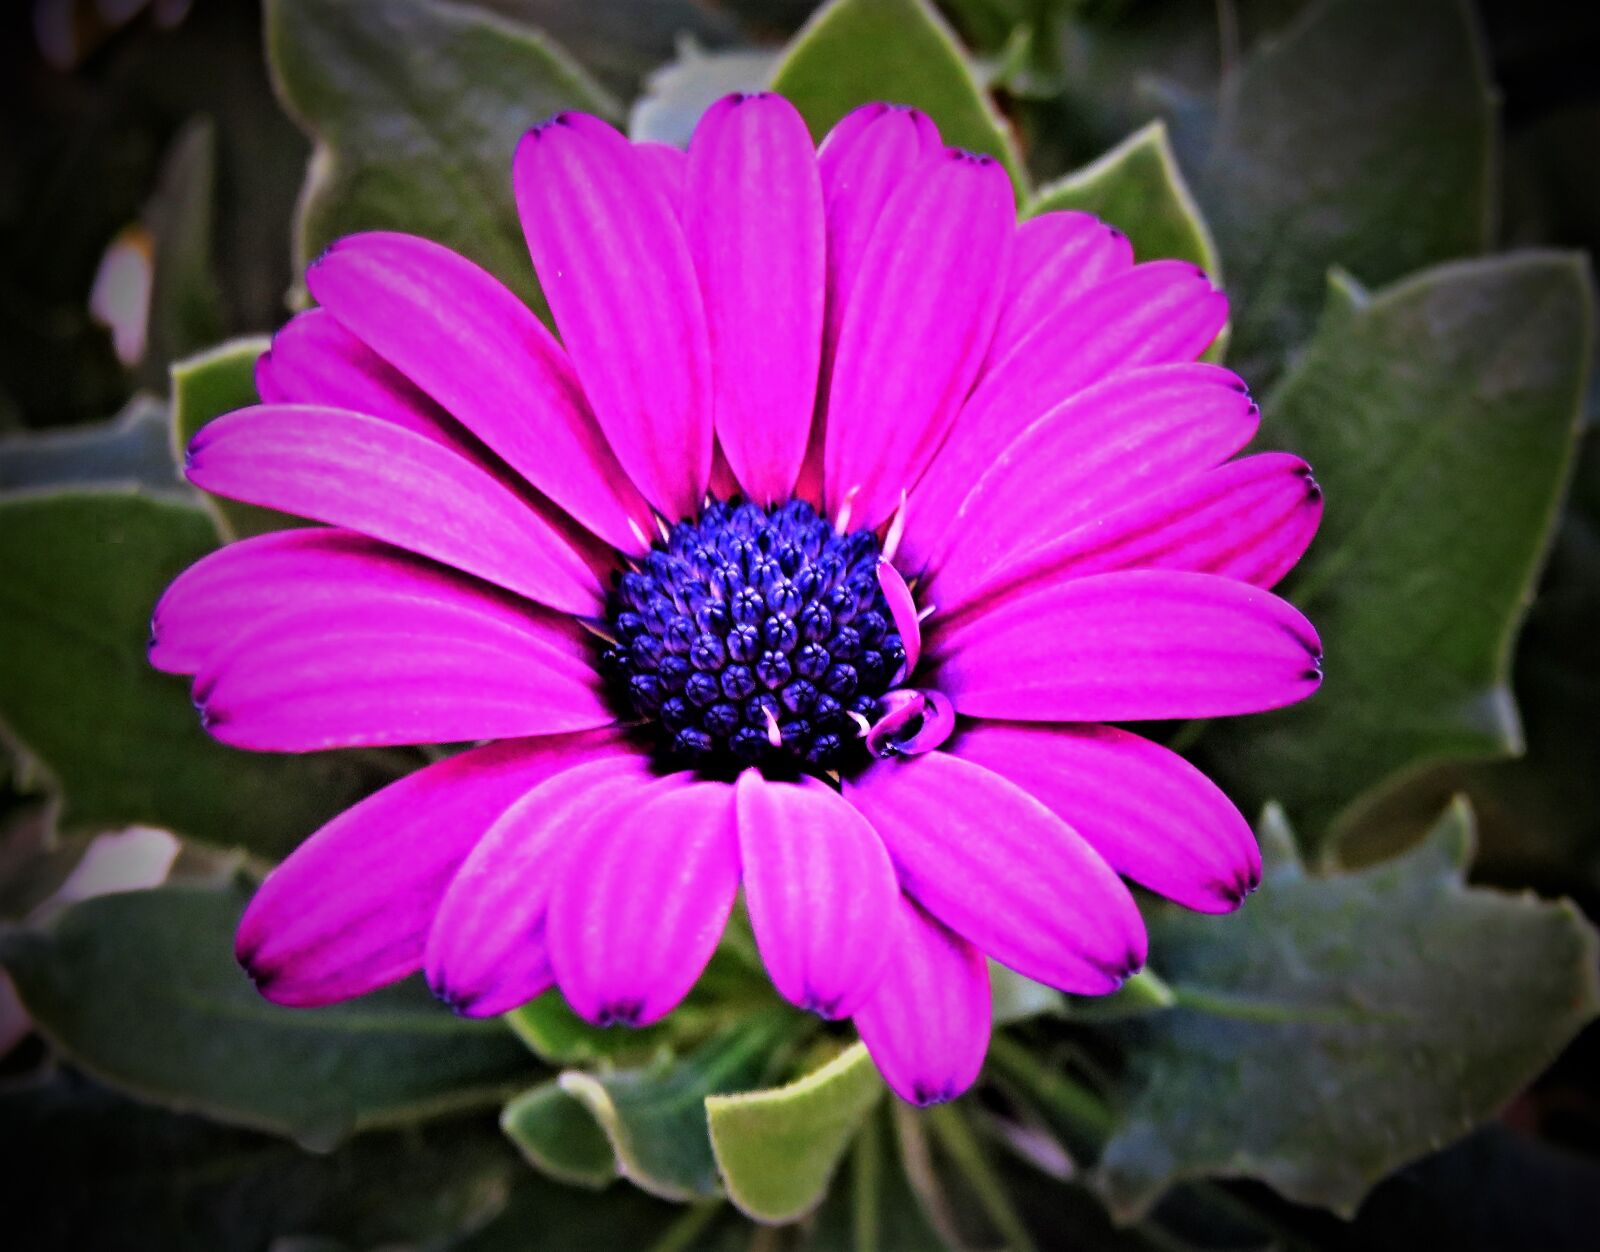 Canon PowerShot SX710 HS sample photo. Flower, cape daisies, cape photography